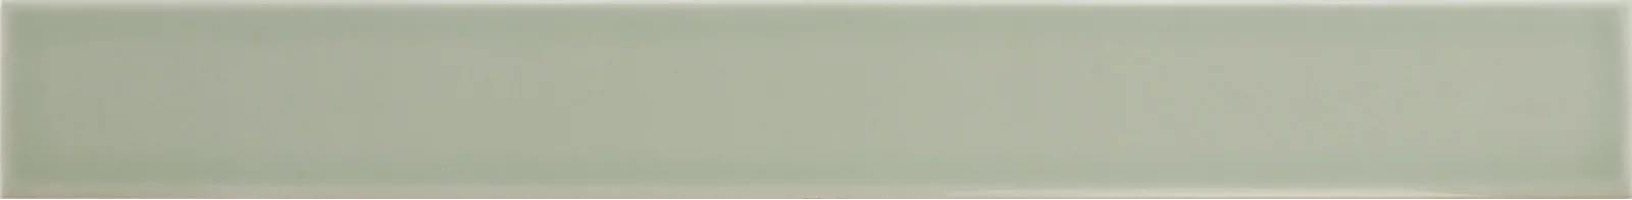 Плитка Equipe Vitral Mint 5x40 31141 настенная